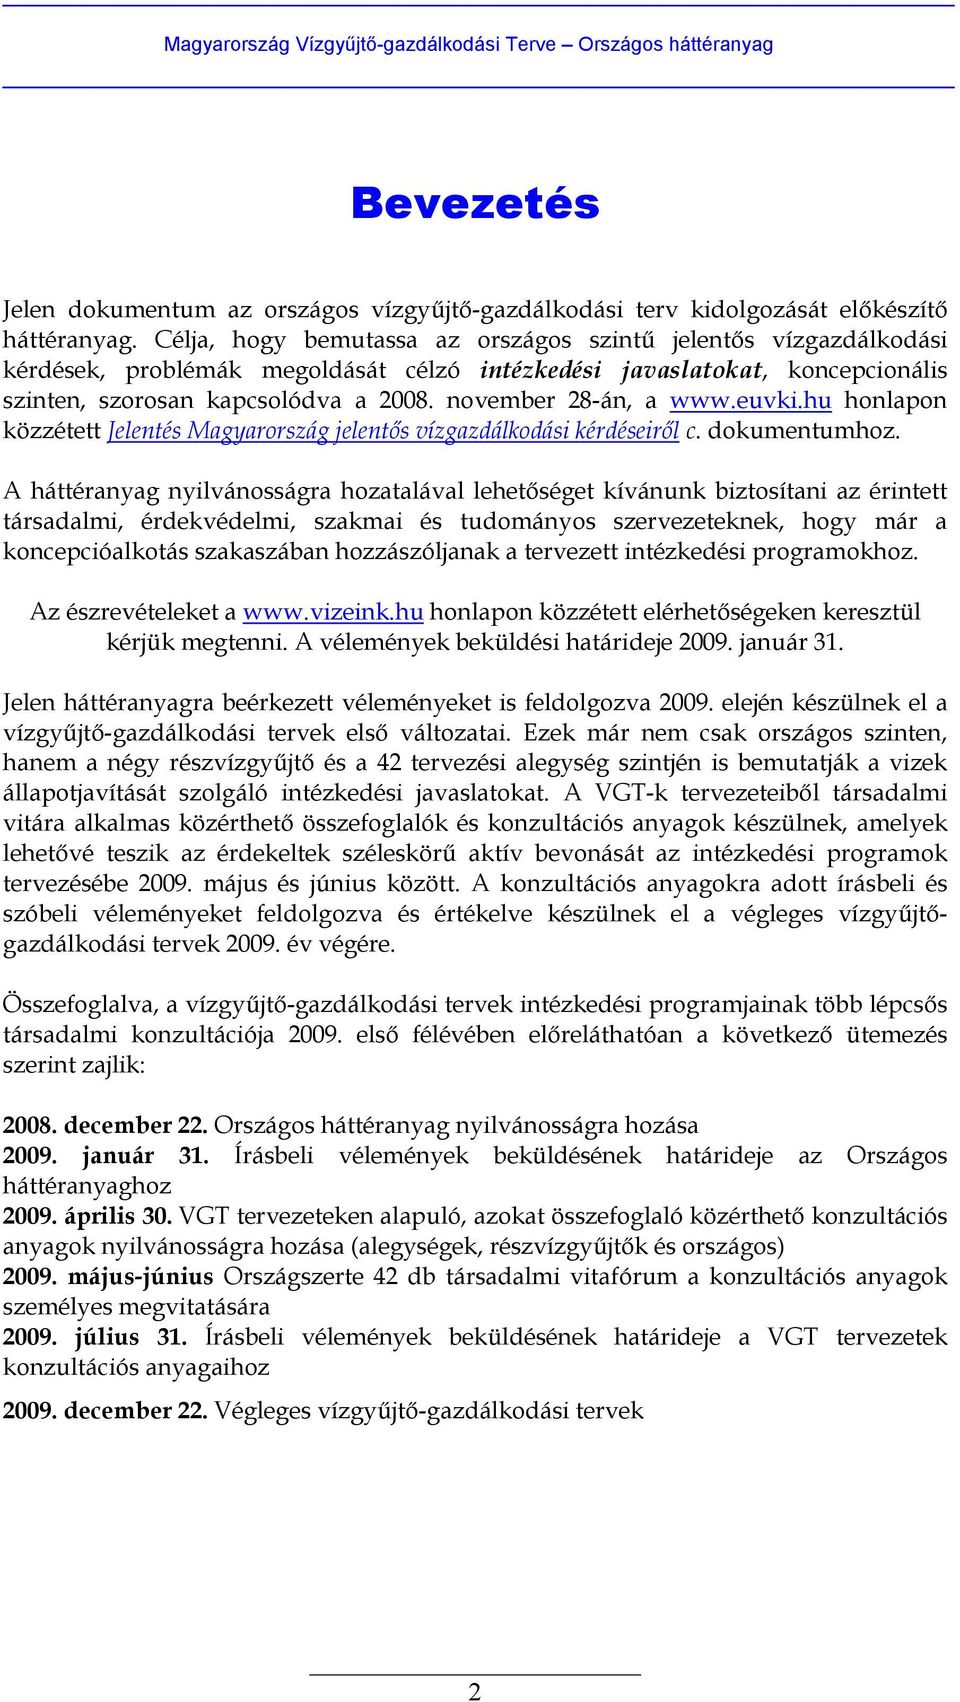 november 28-án, a www.euvki.hu honlapon közzétett Jelentés Magyarország jelentős vízgazdálkodási kérdéseiről c. dokumentumhoz.